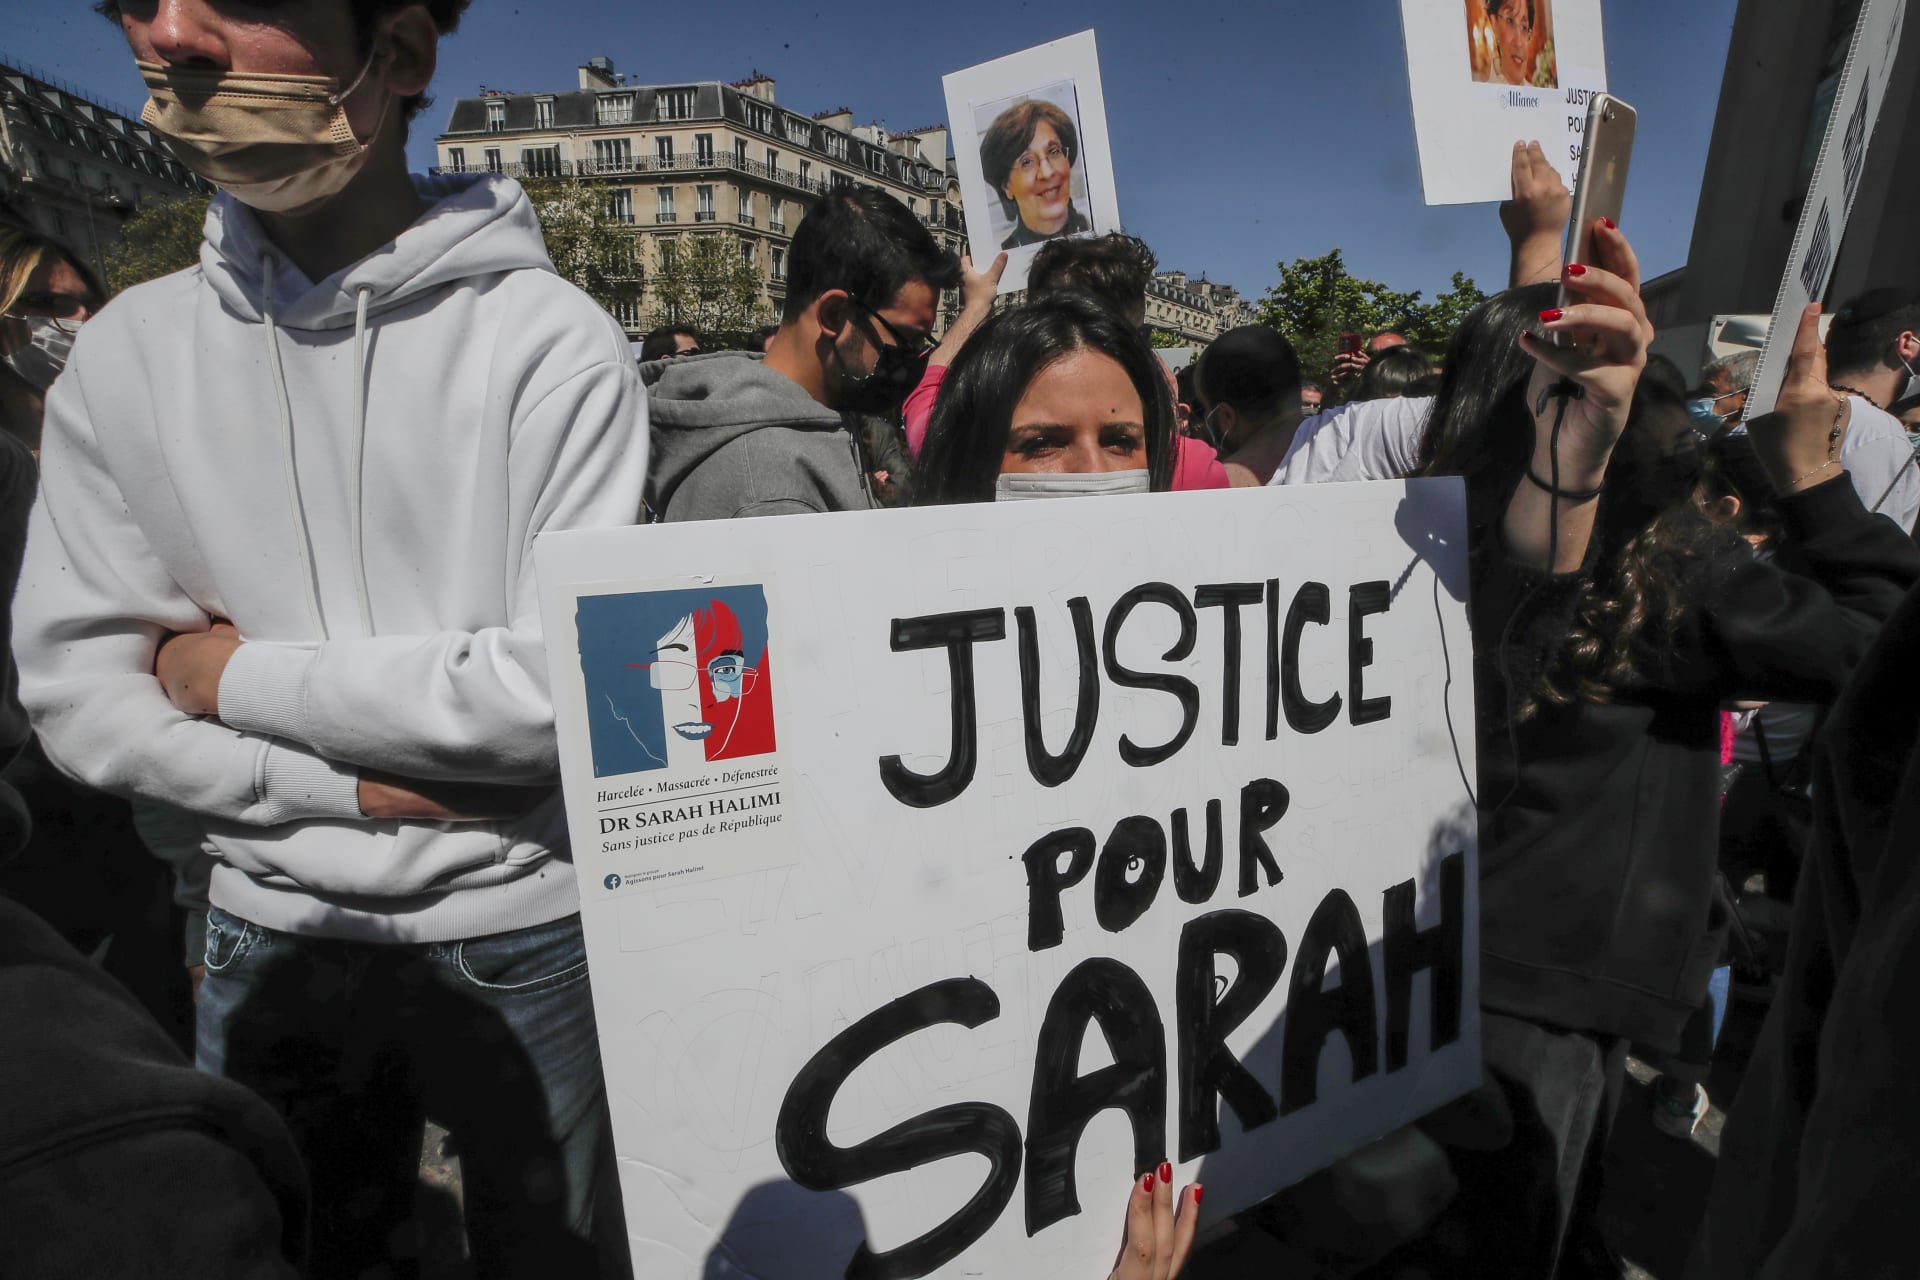 Rozsudek vyvolal řadu reakcí po celém světě včetně protestů ultraortodoxní komunity židů v Paříži.